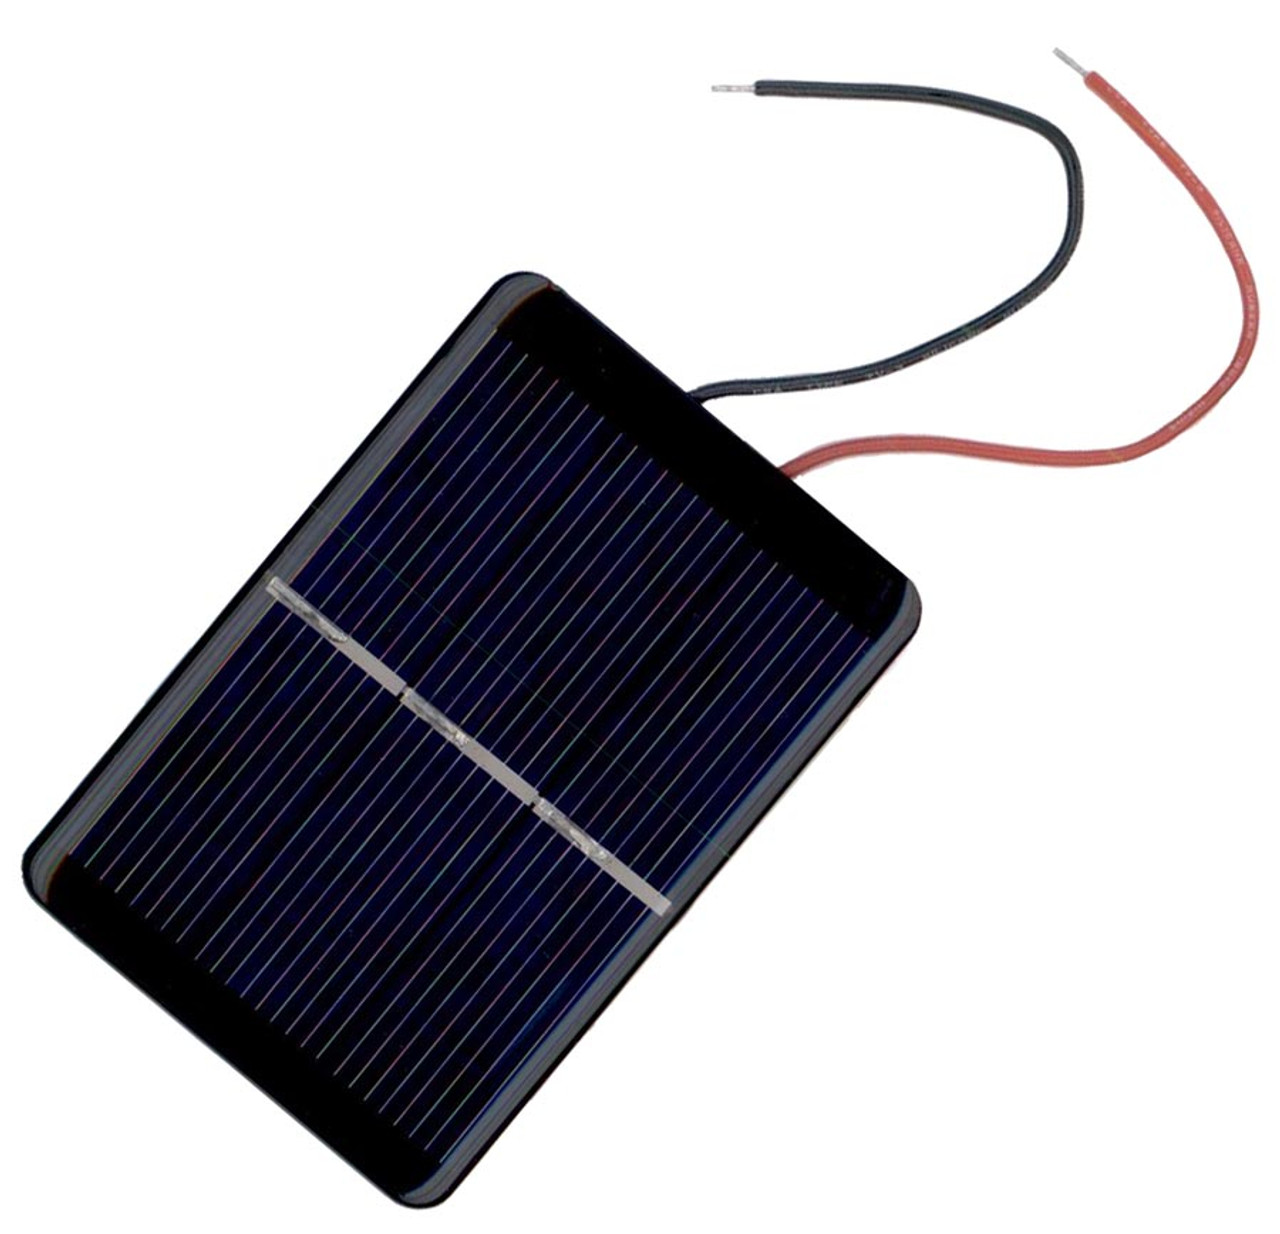 Solar cell, 1.5 volt, 500 ma